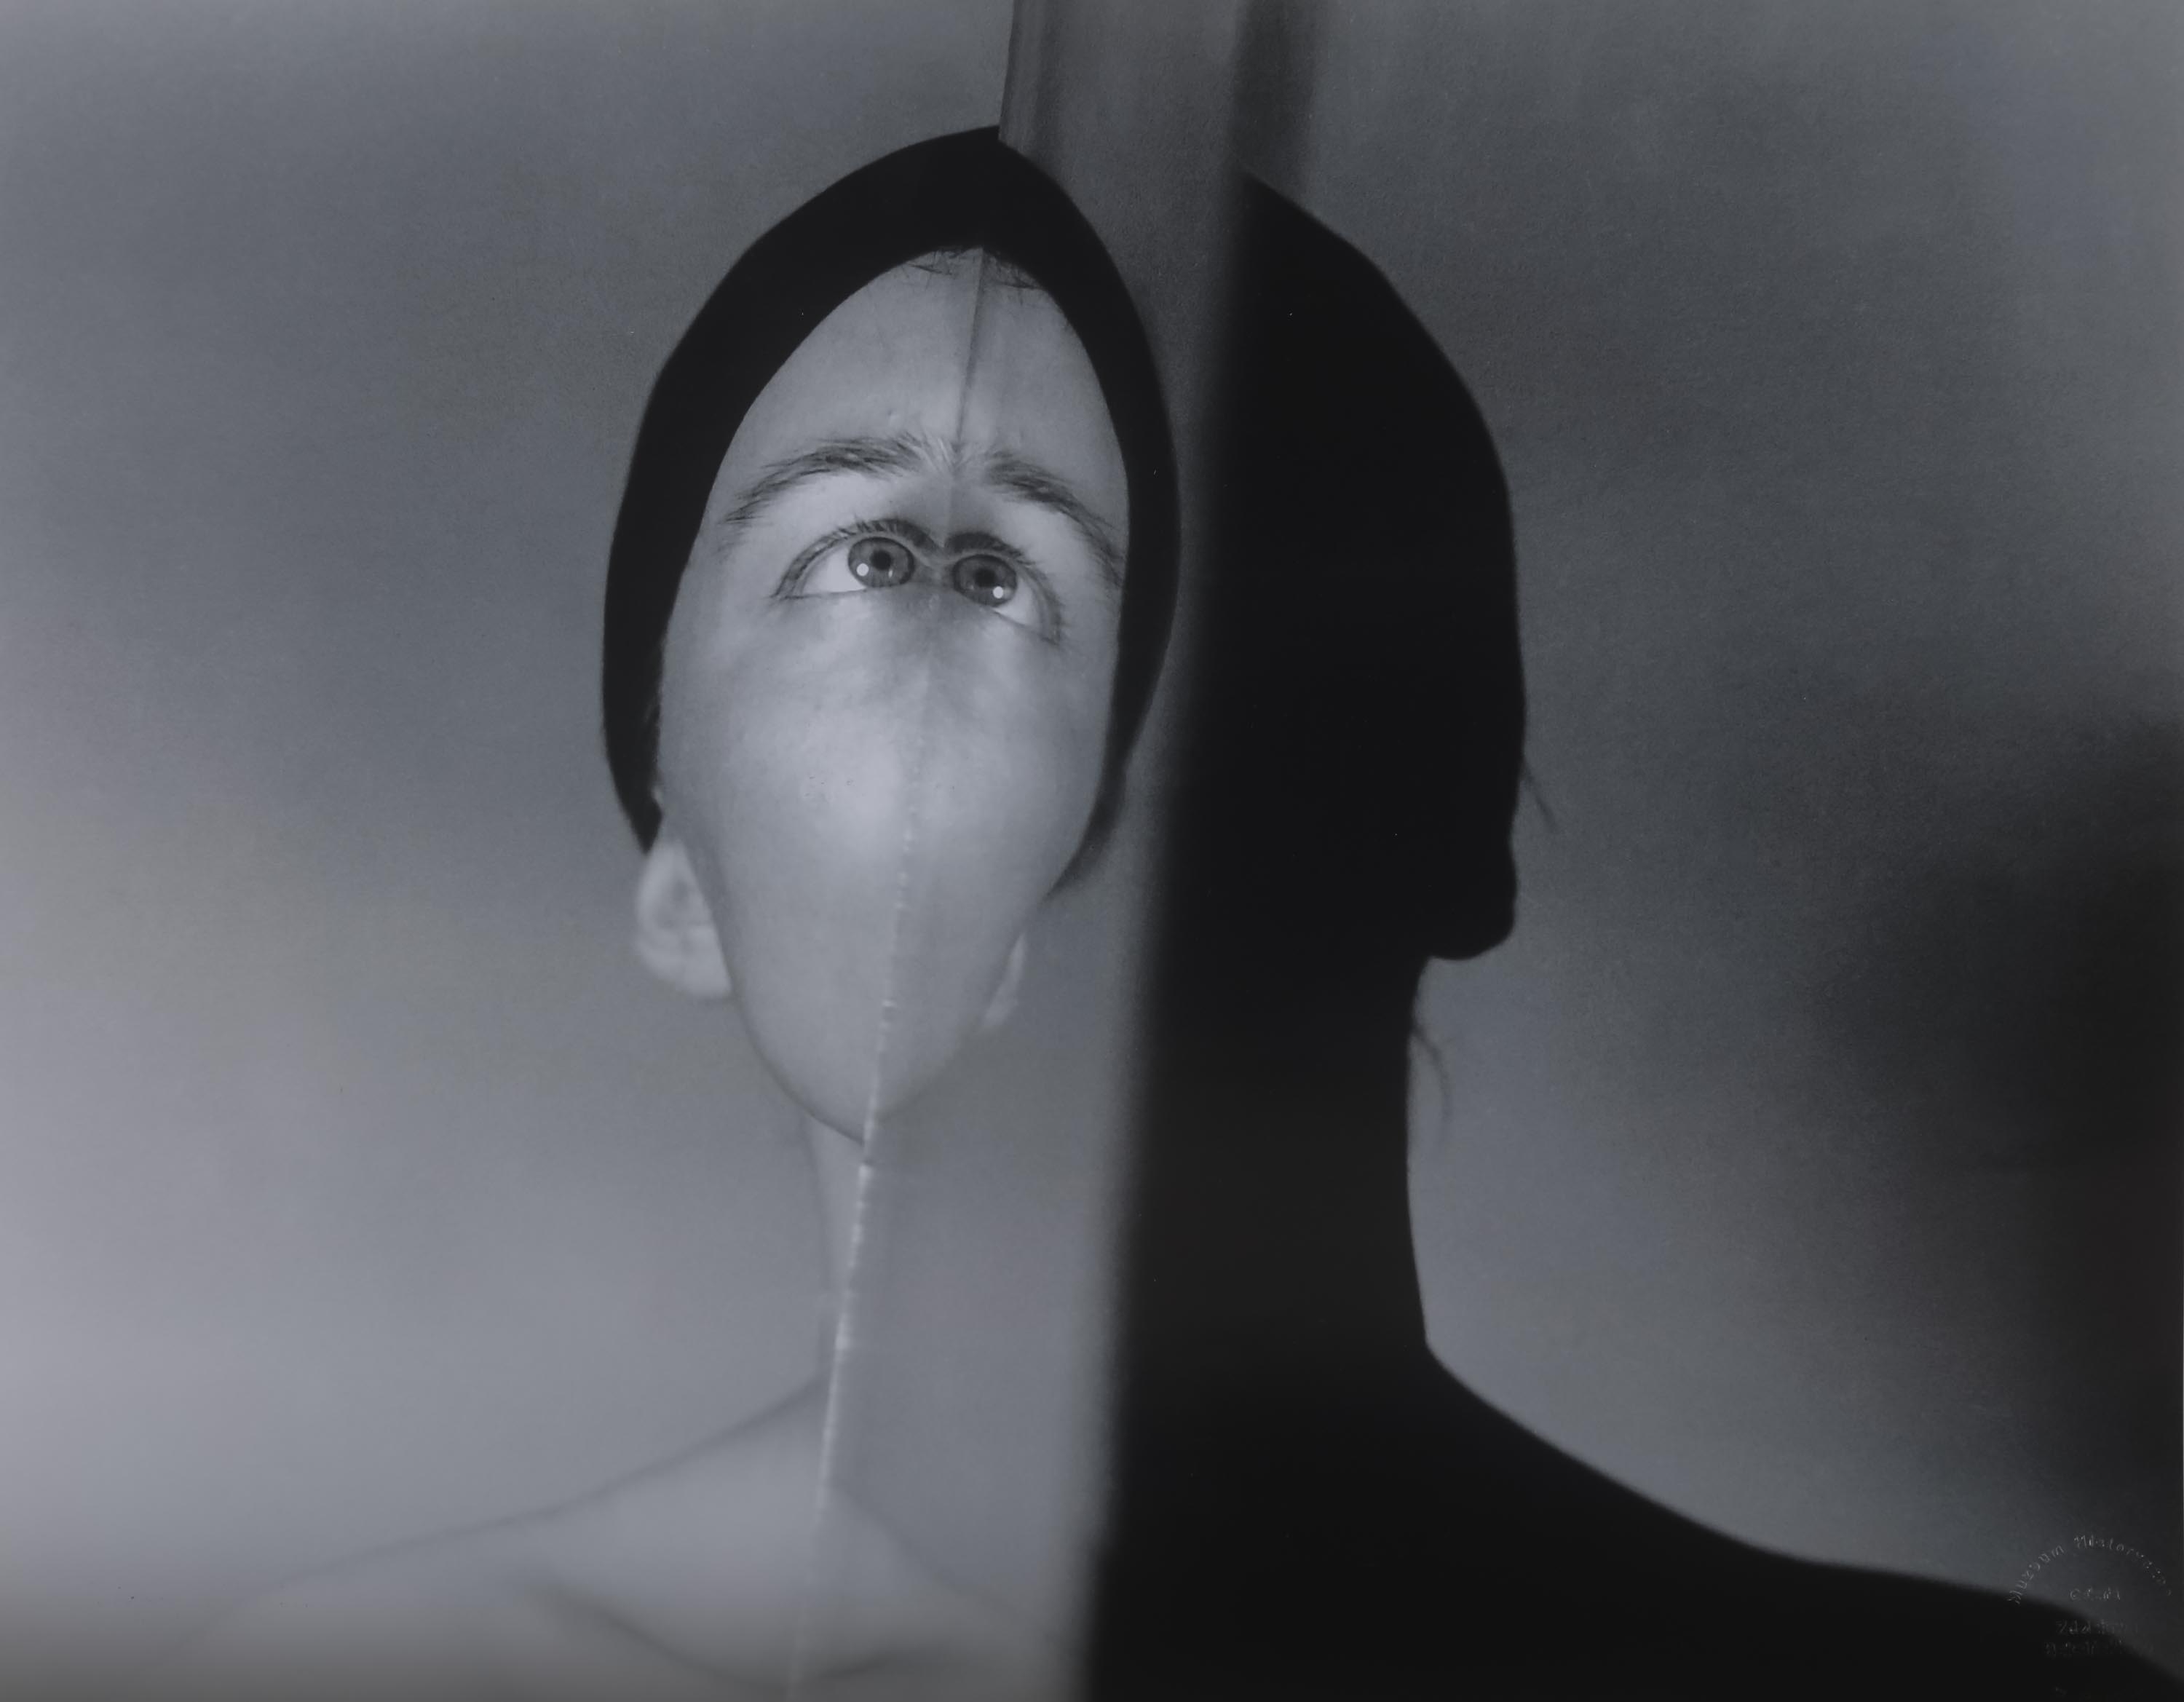 Twarz w lustrze (Strefa I) by Zdzisław Beksiński, 1957